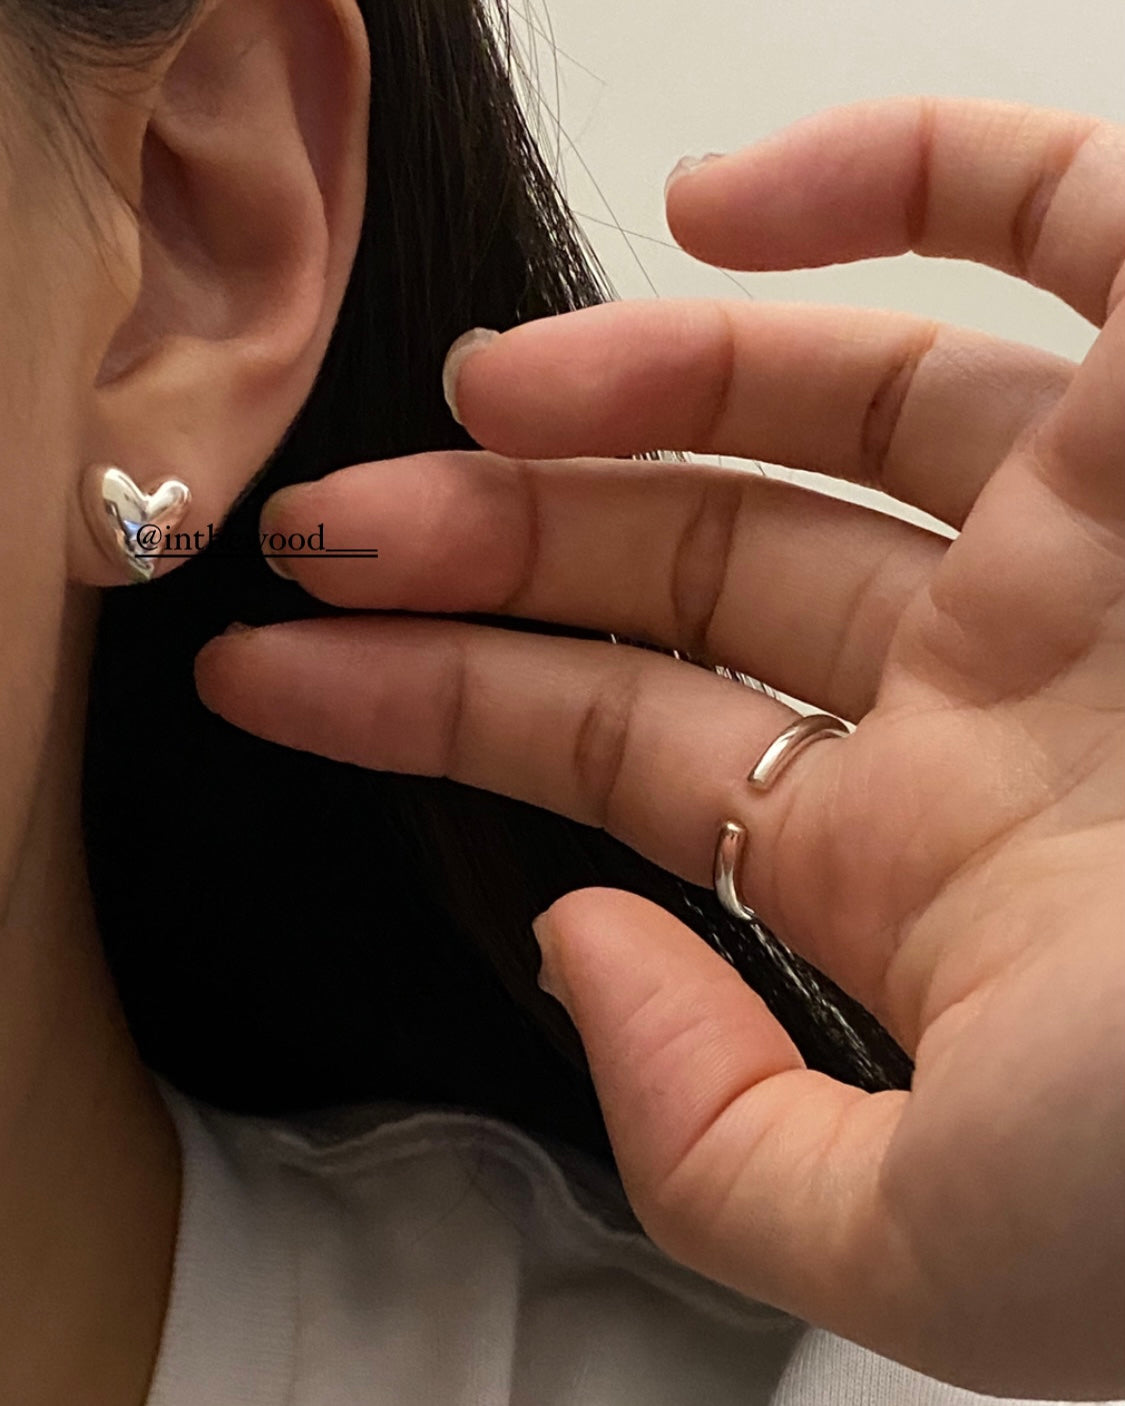 [925silver] Star in Heart Earrings